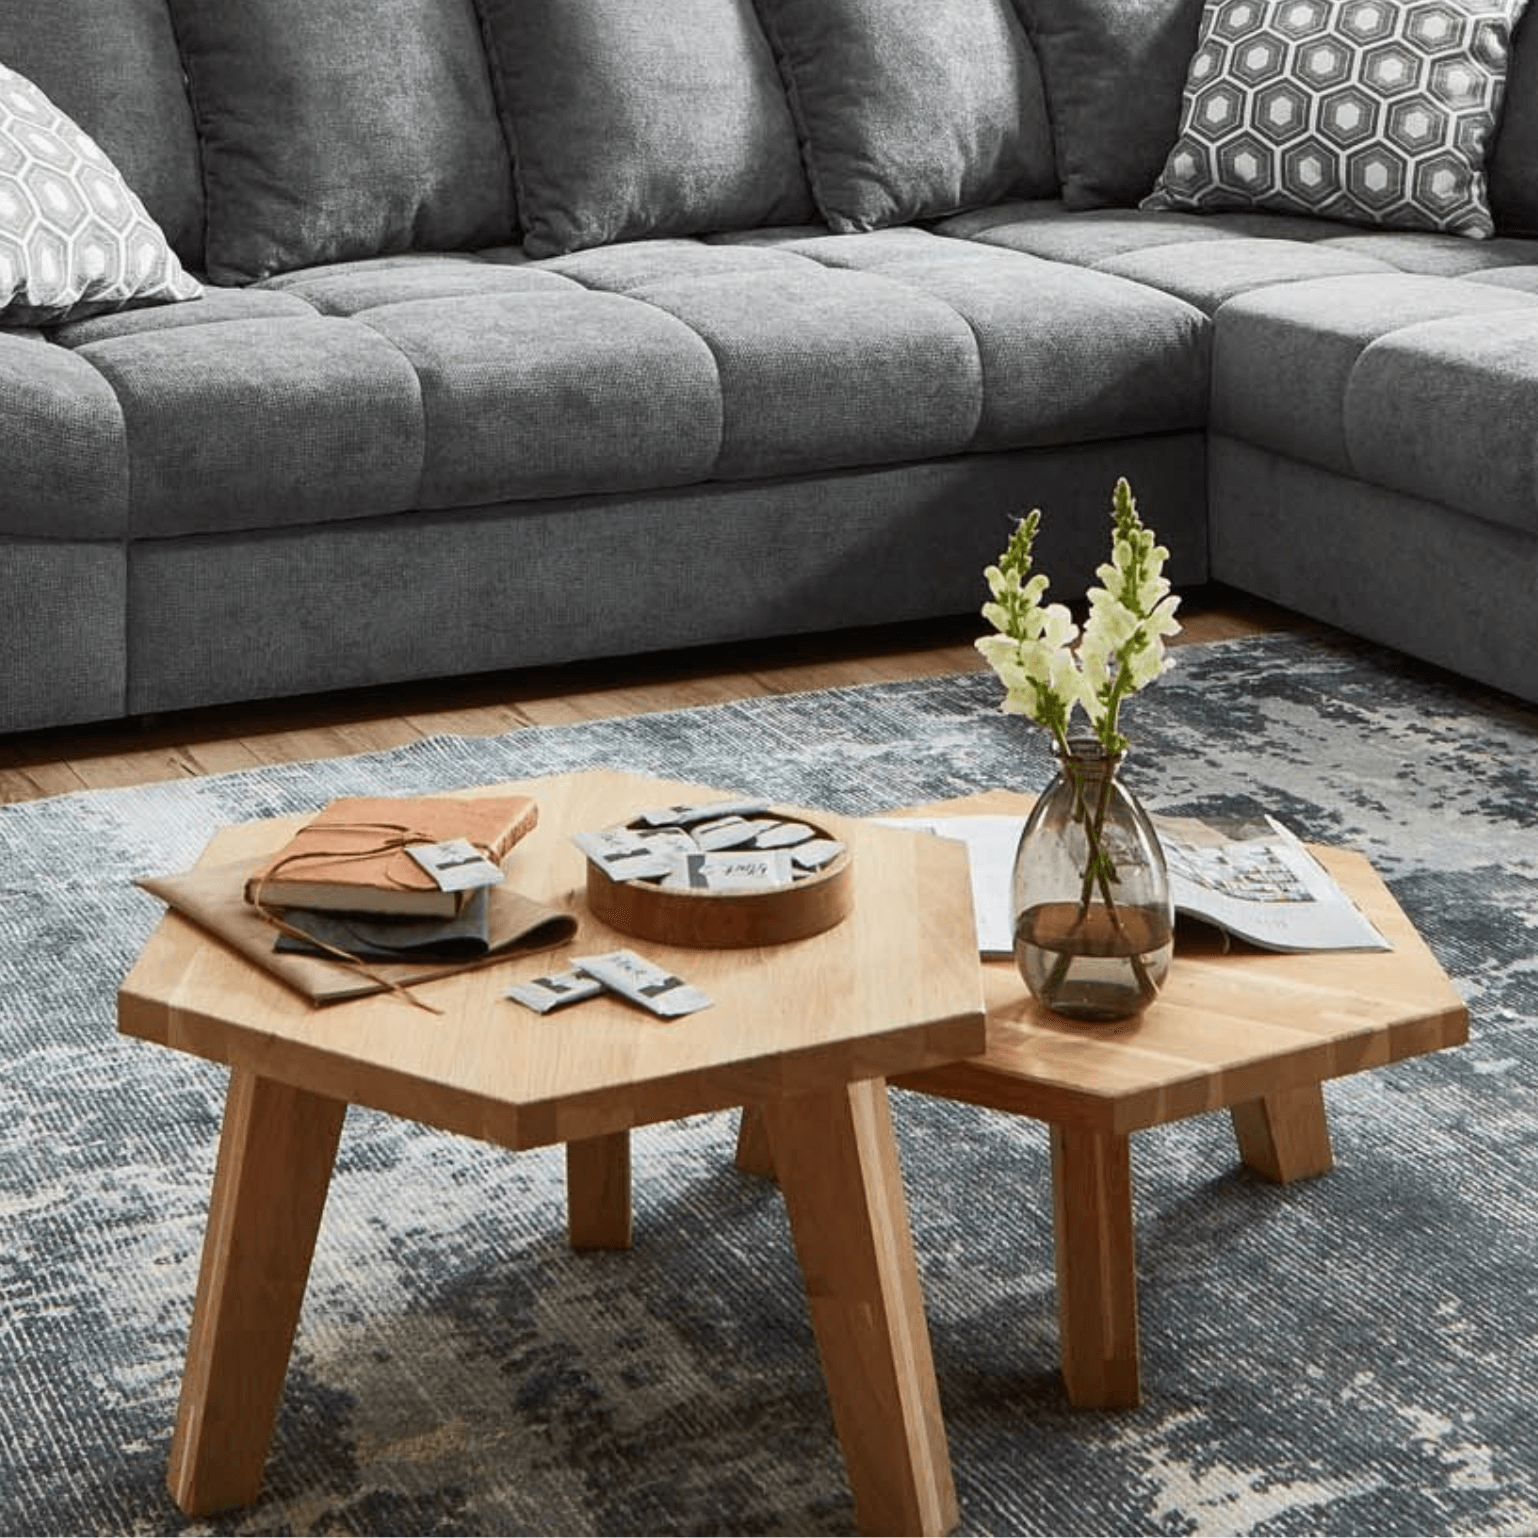 "Notre table basse en bois : naturelle, intemporelle et pratique. Créez un point central confortable dans votre salon avec notre table basse en bois de haute qualité".